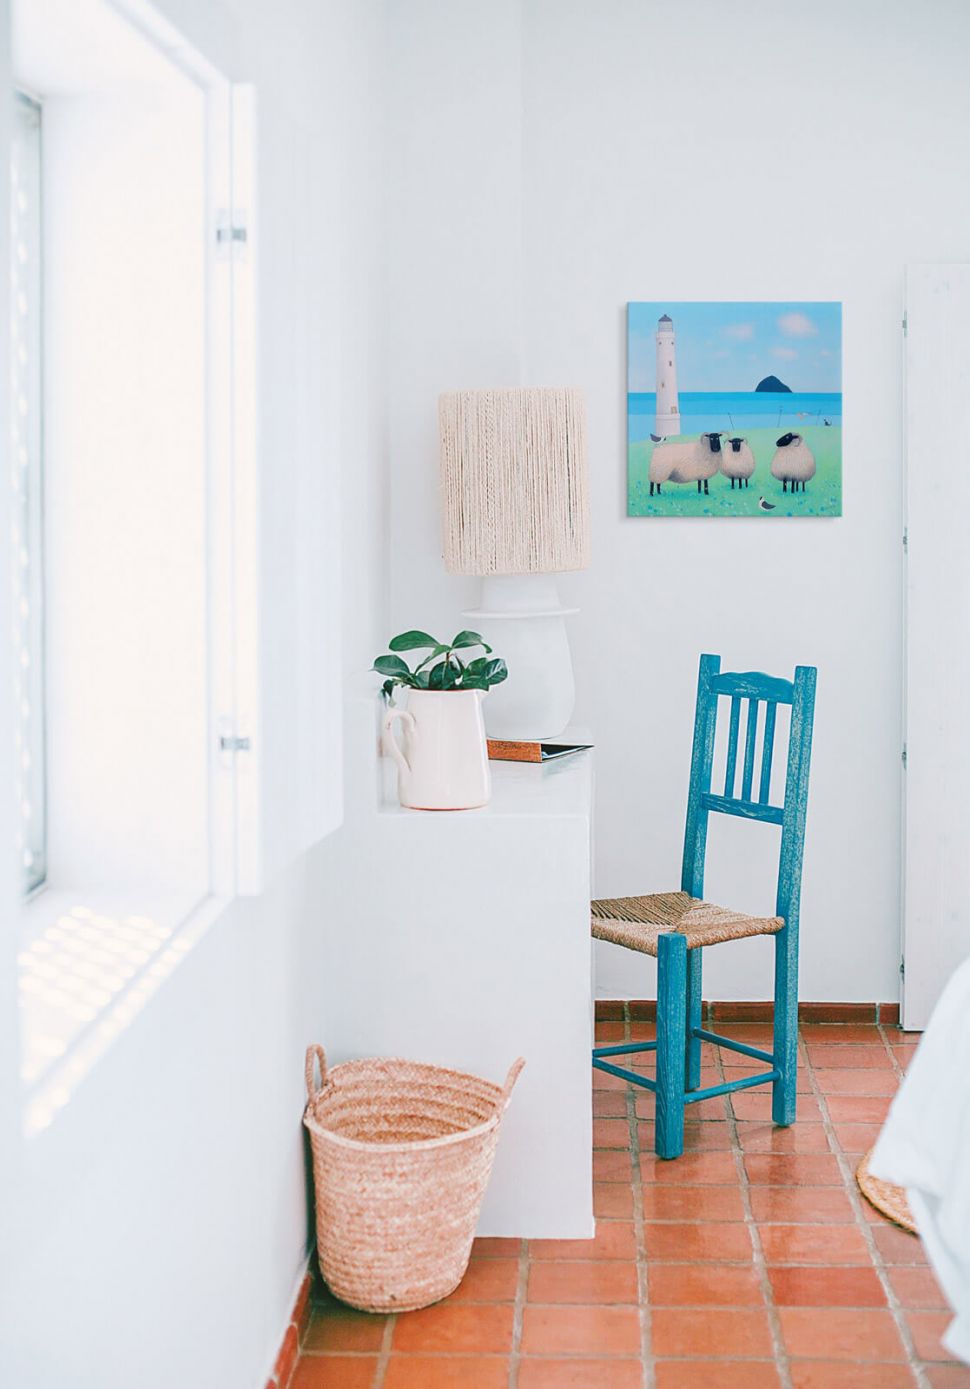 Obraz na płótnie Wind on Wool na ścianie w kuchni nad niebieskim krzesłem